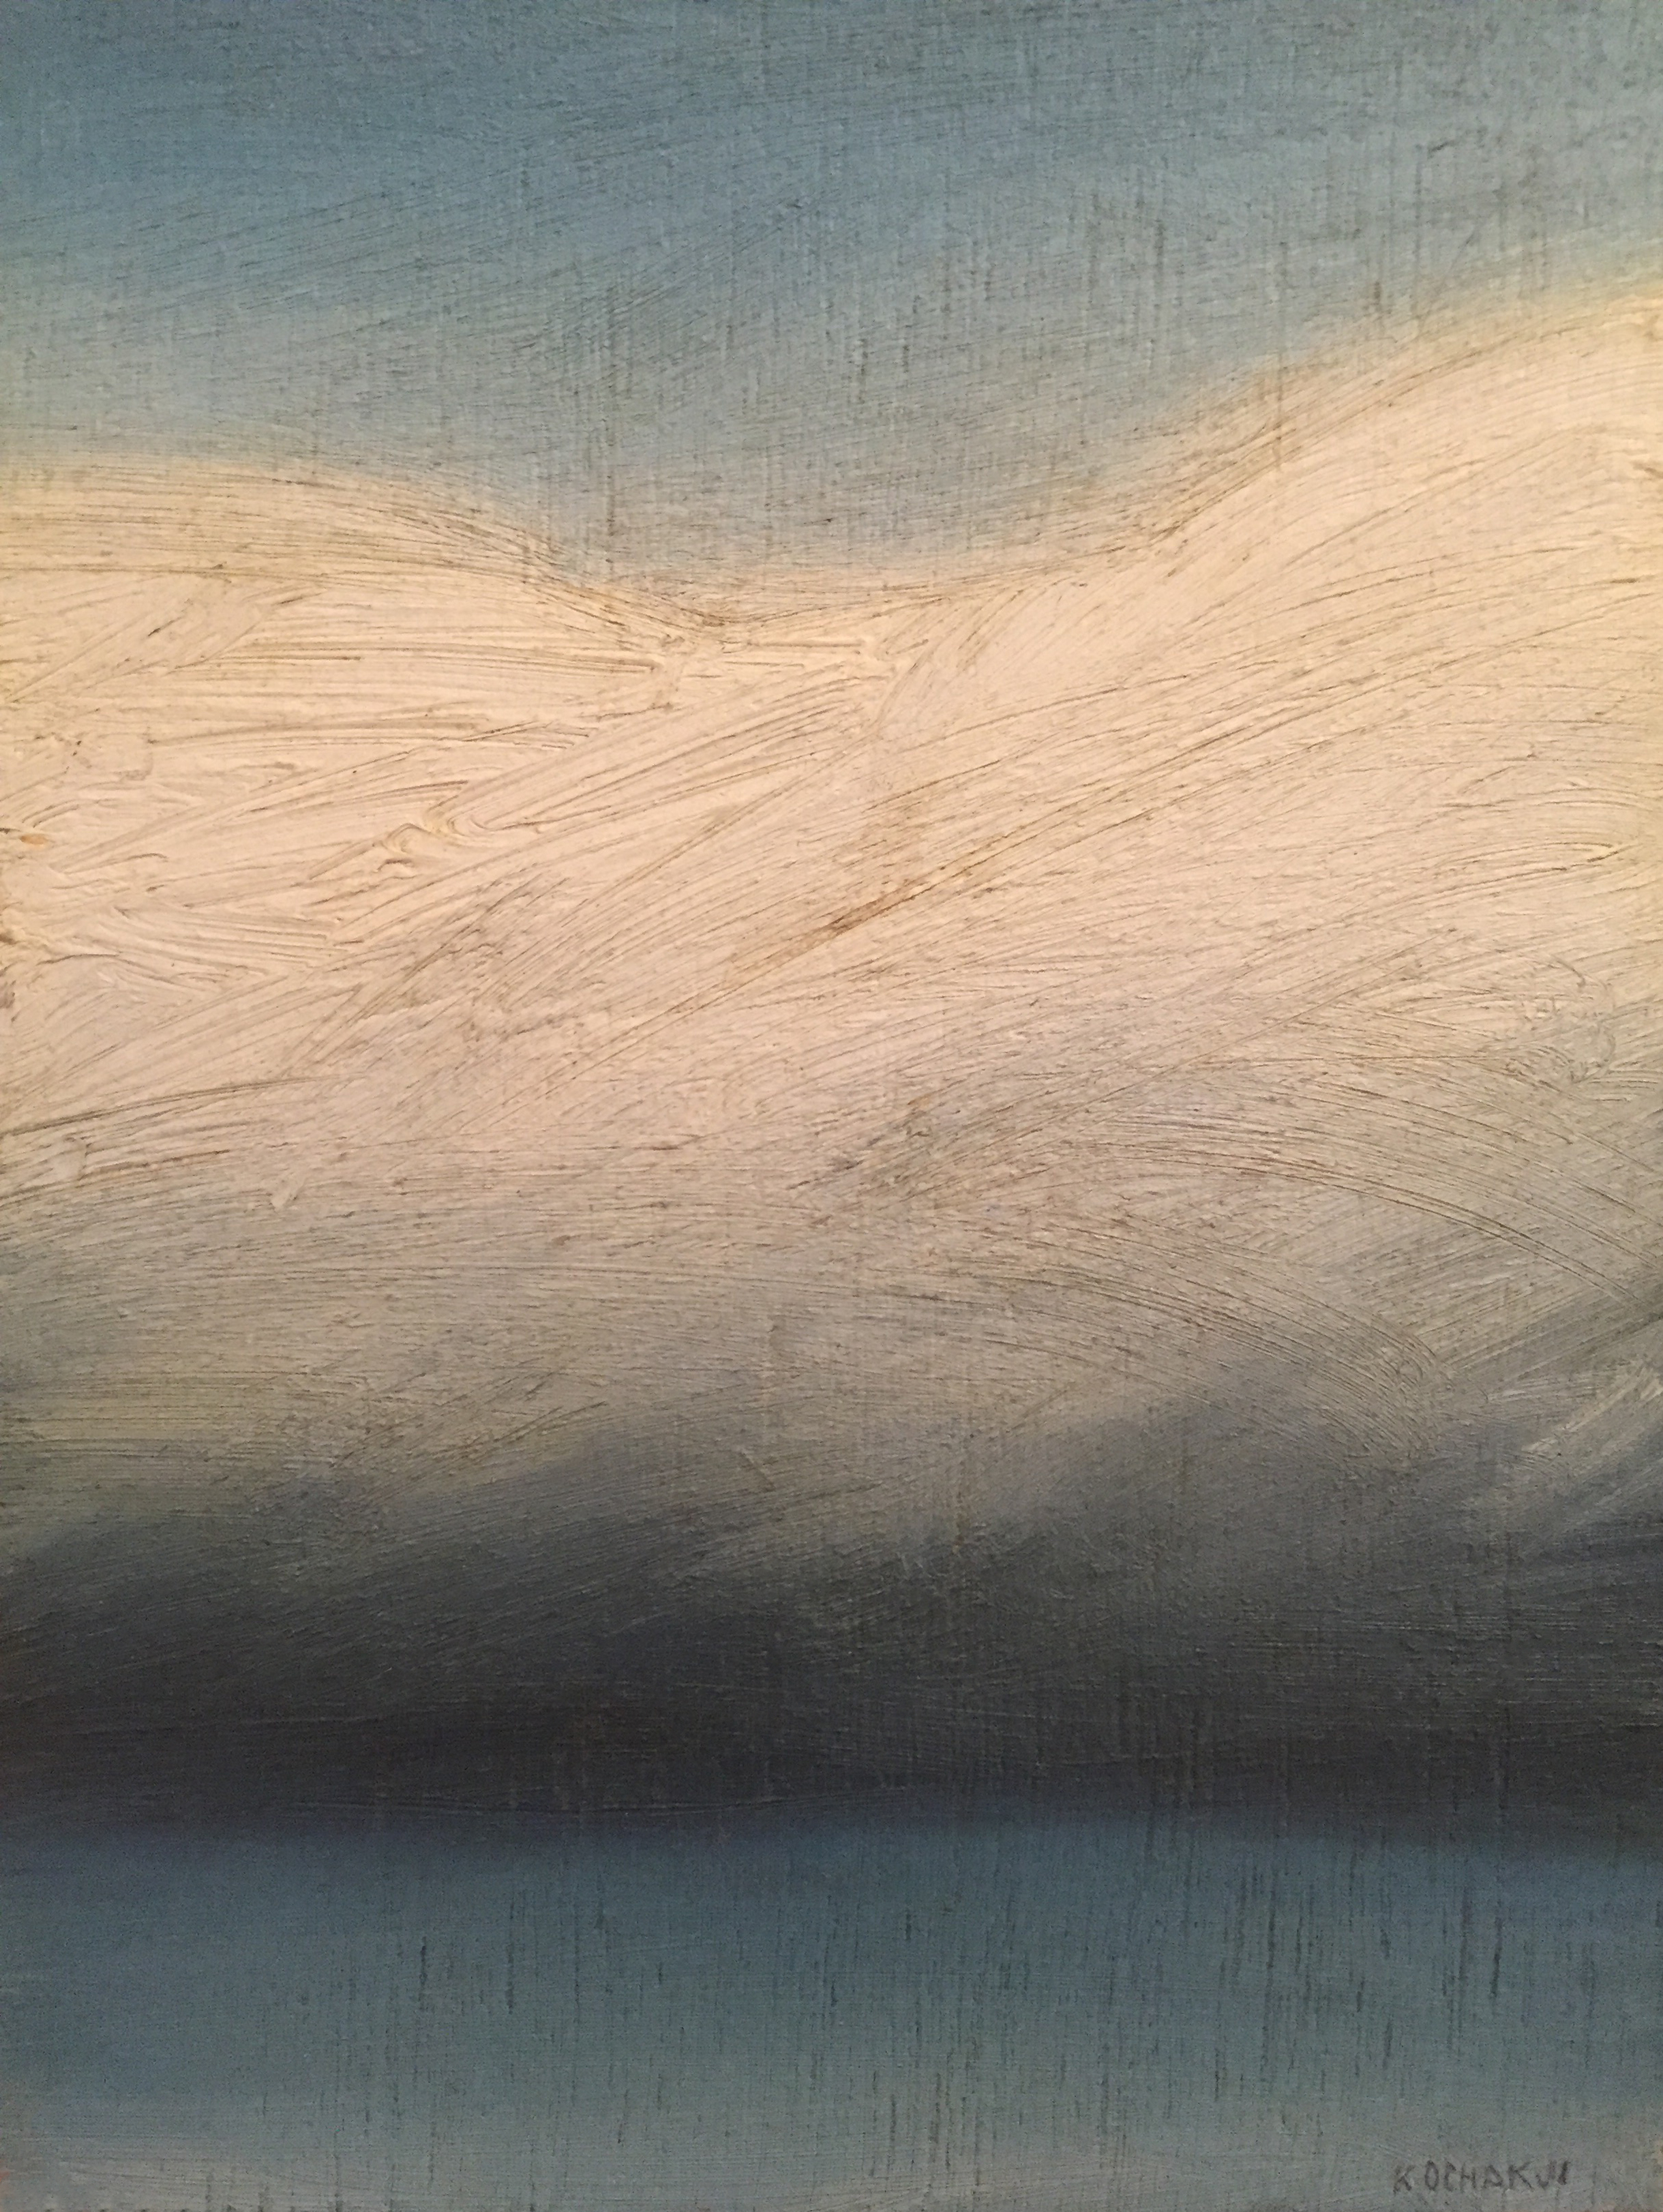 Cloud Portrait - oil on panel - 5x7" 